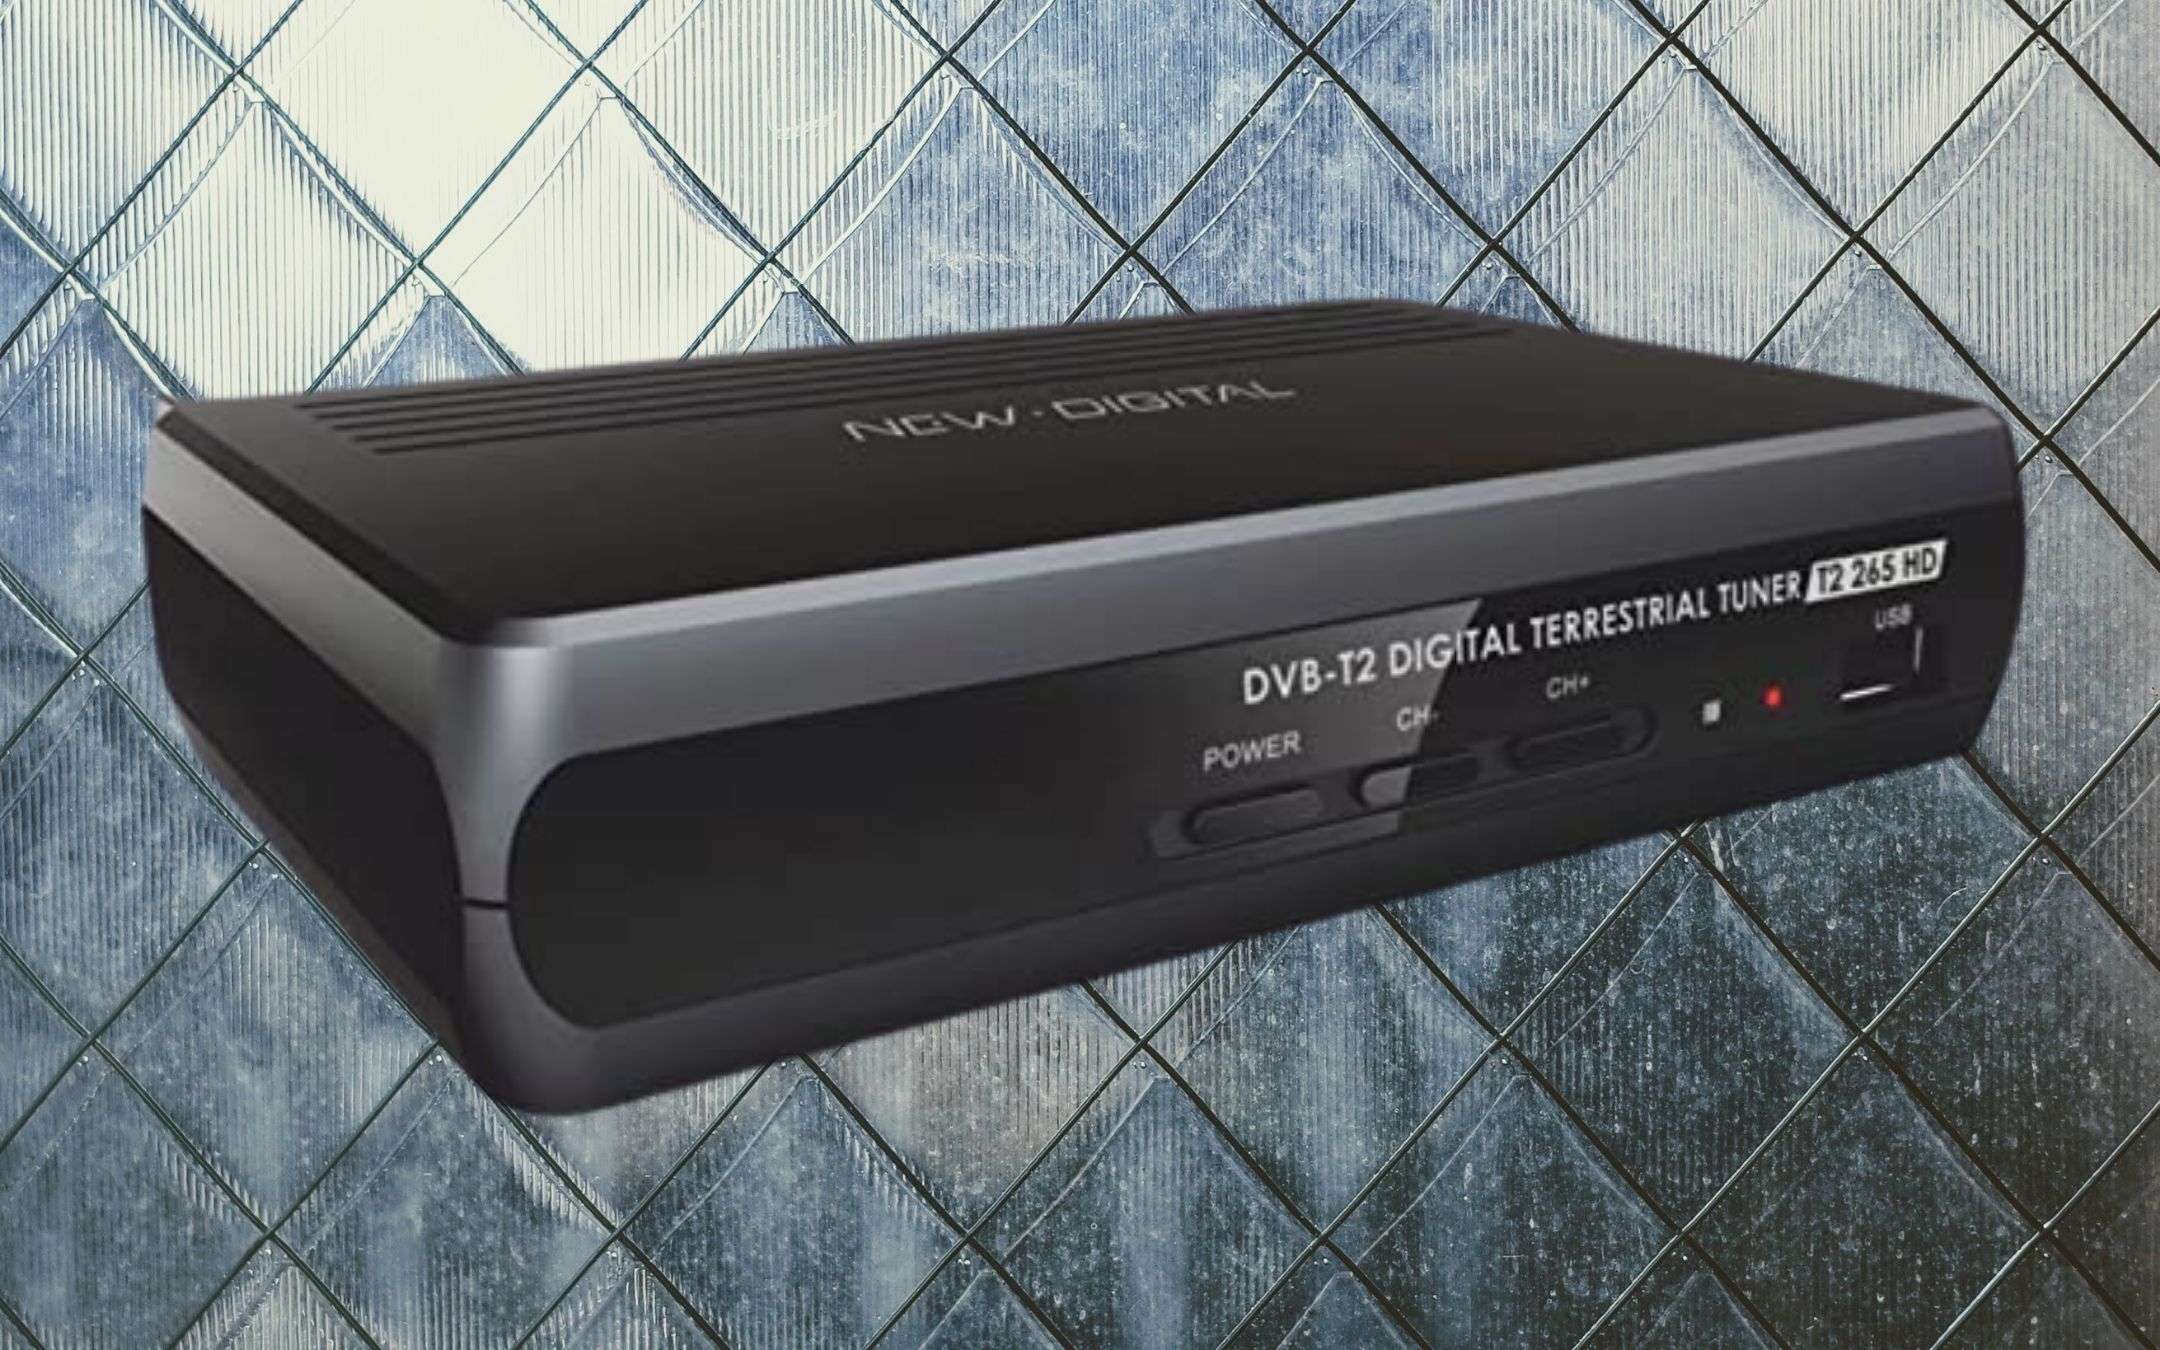 Nuovo digitale DVB T2: MIGLIOR decoder e media center (24€)